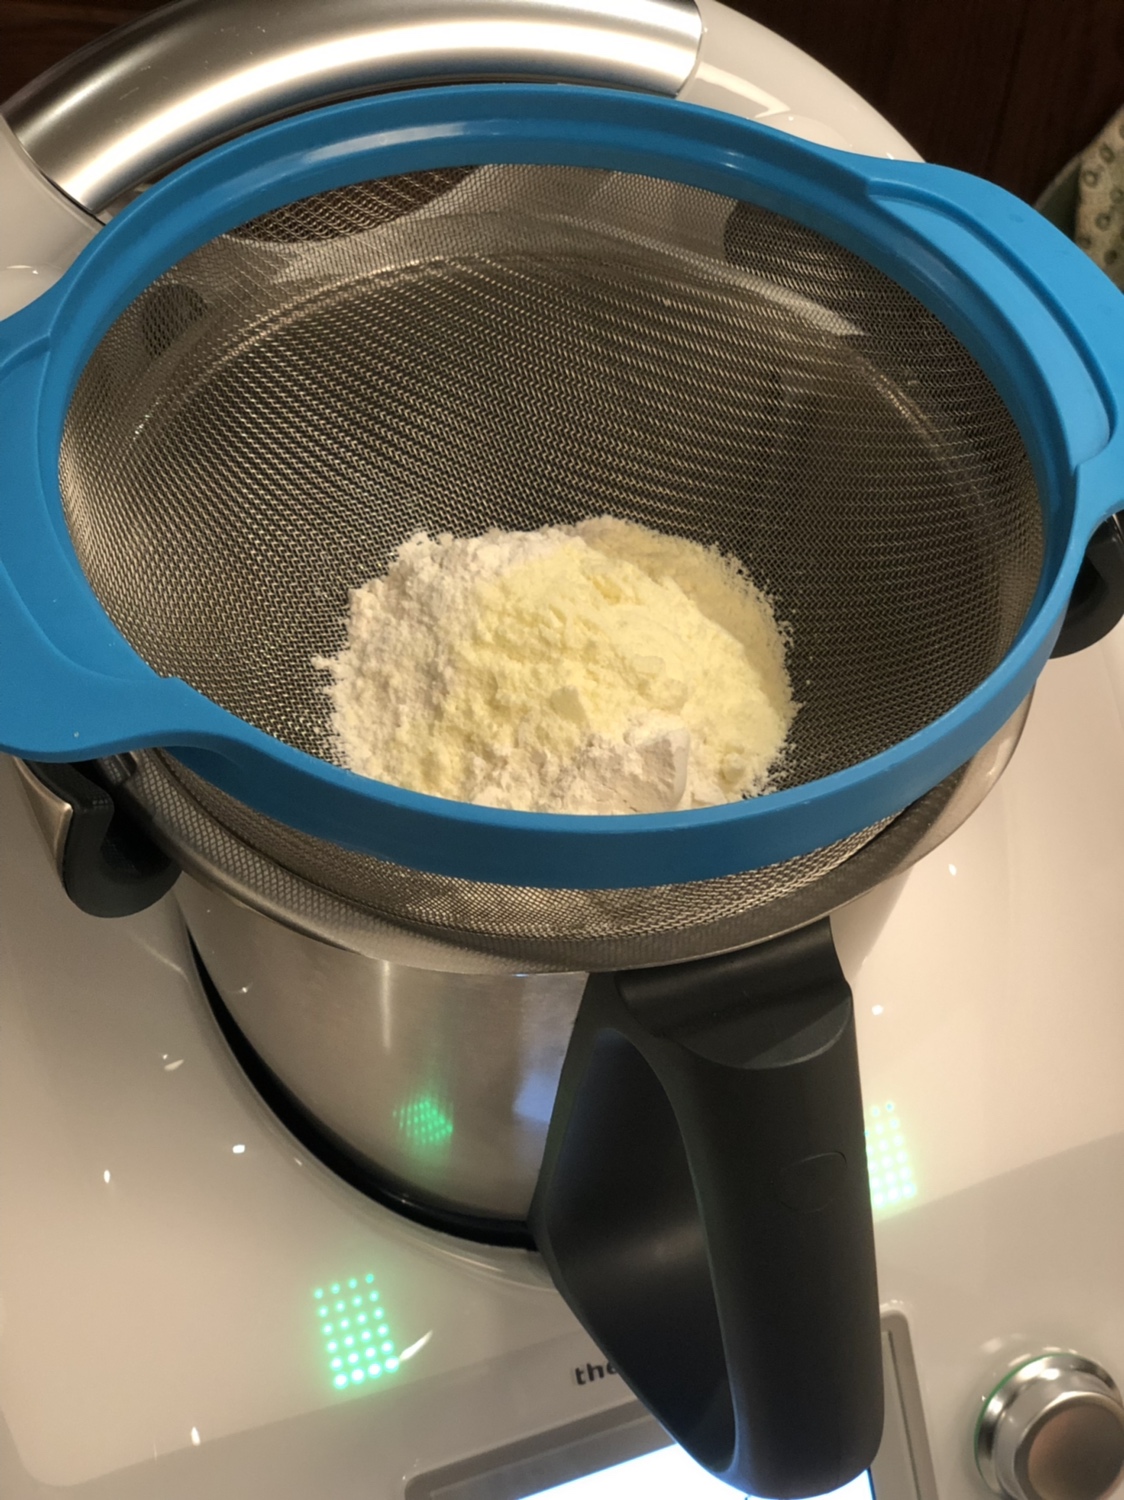 奶黄包的做法 步骤3